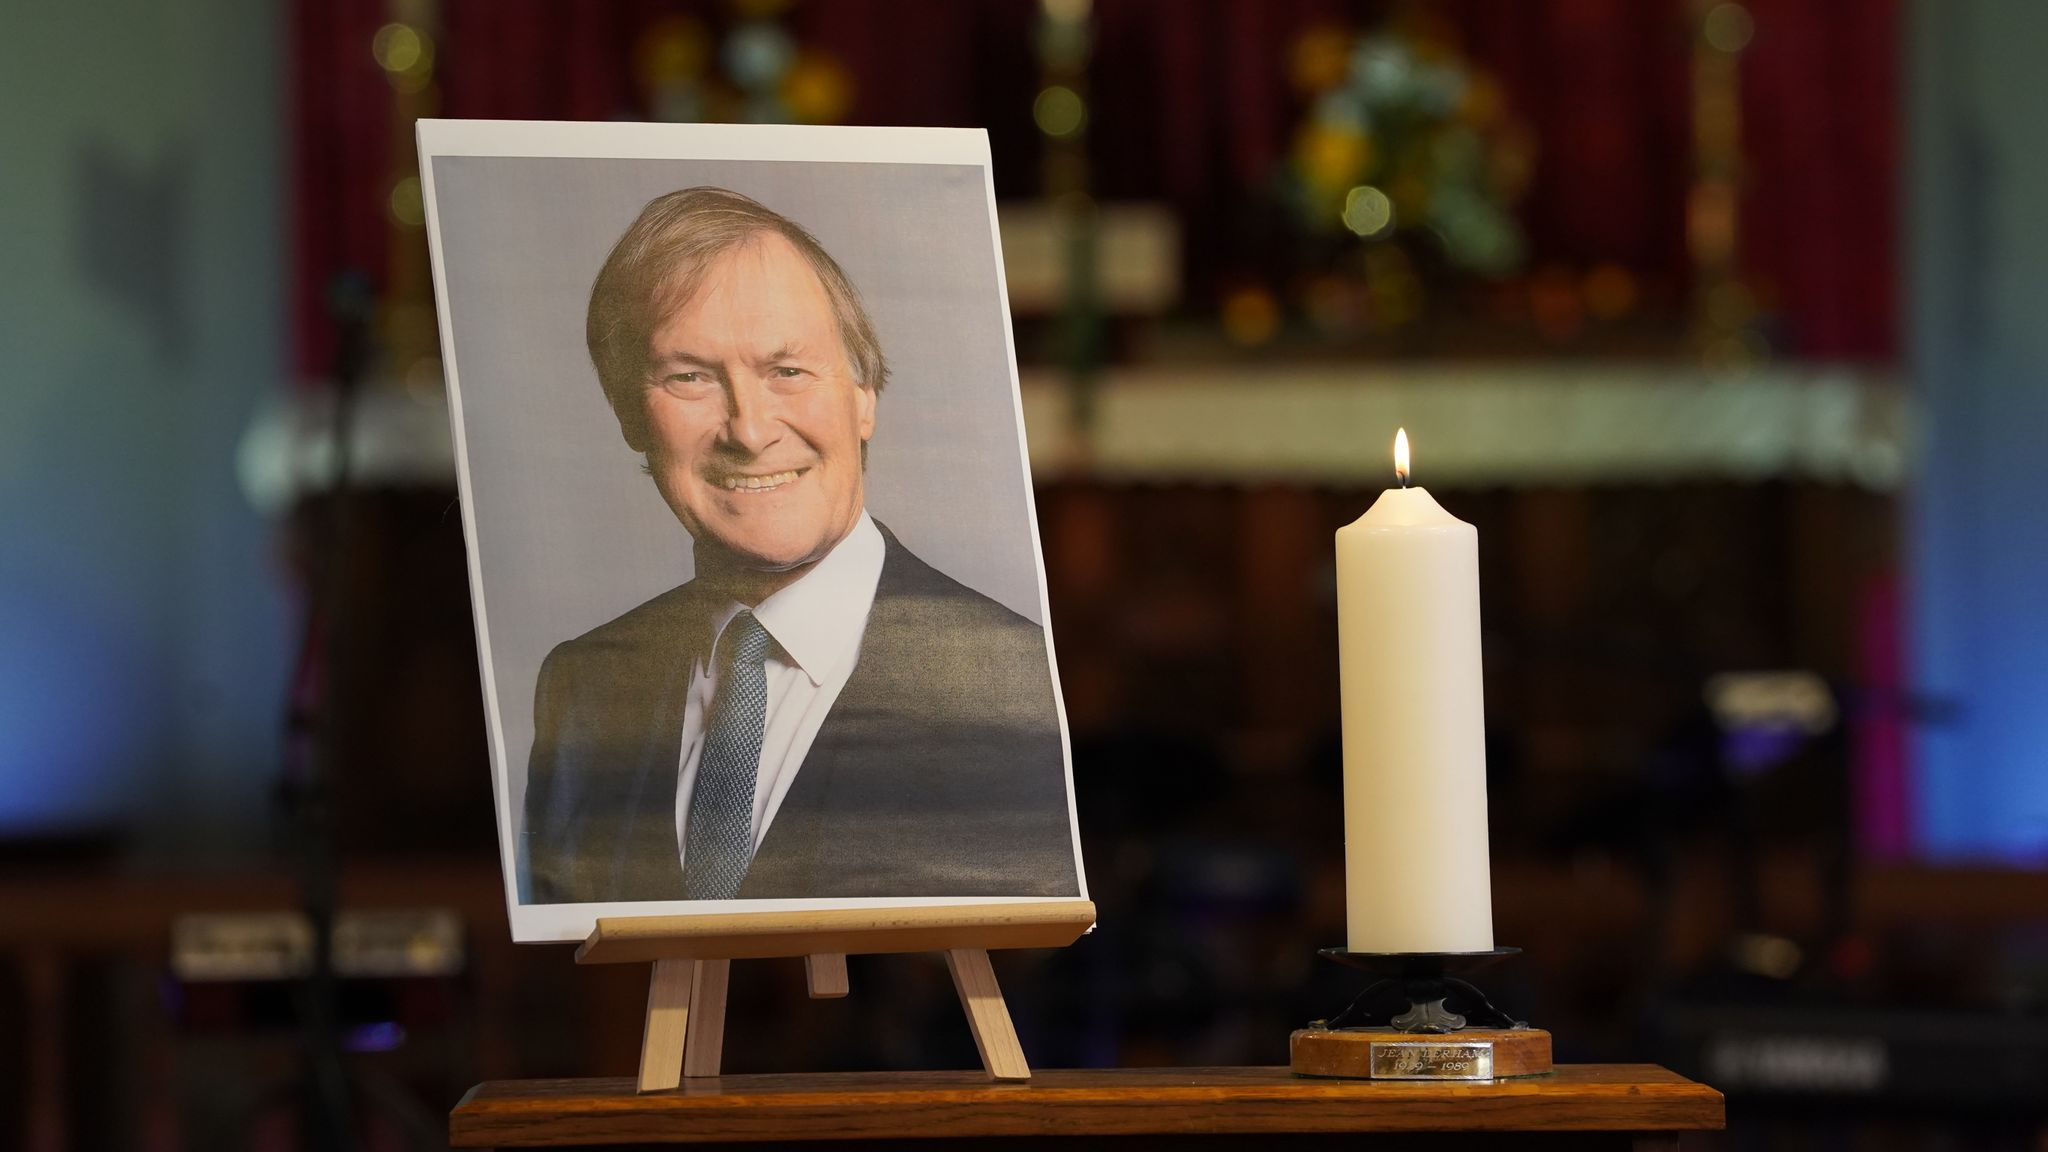 Cinayete kurban giden milletvekili David Amess, parlamentoda anıldı